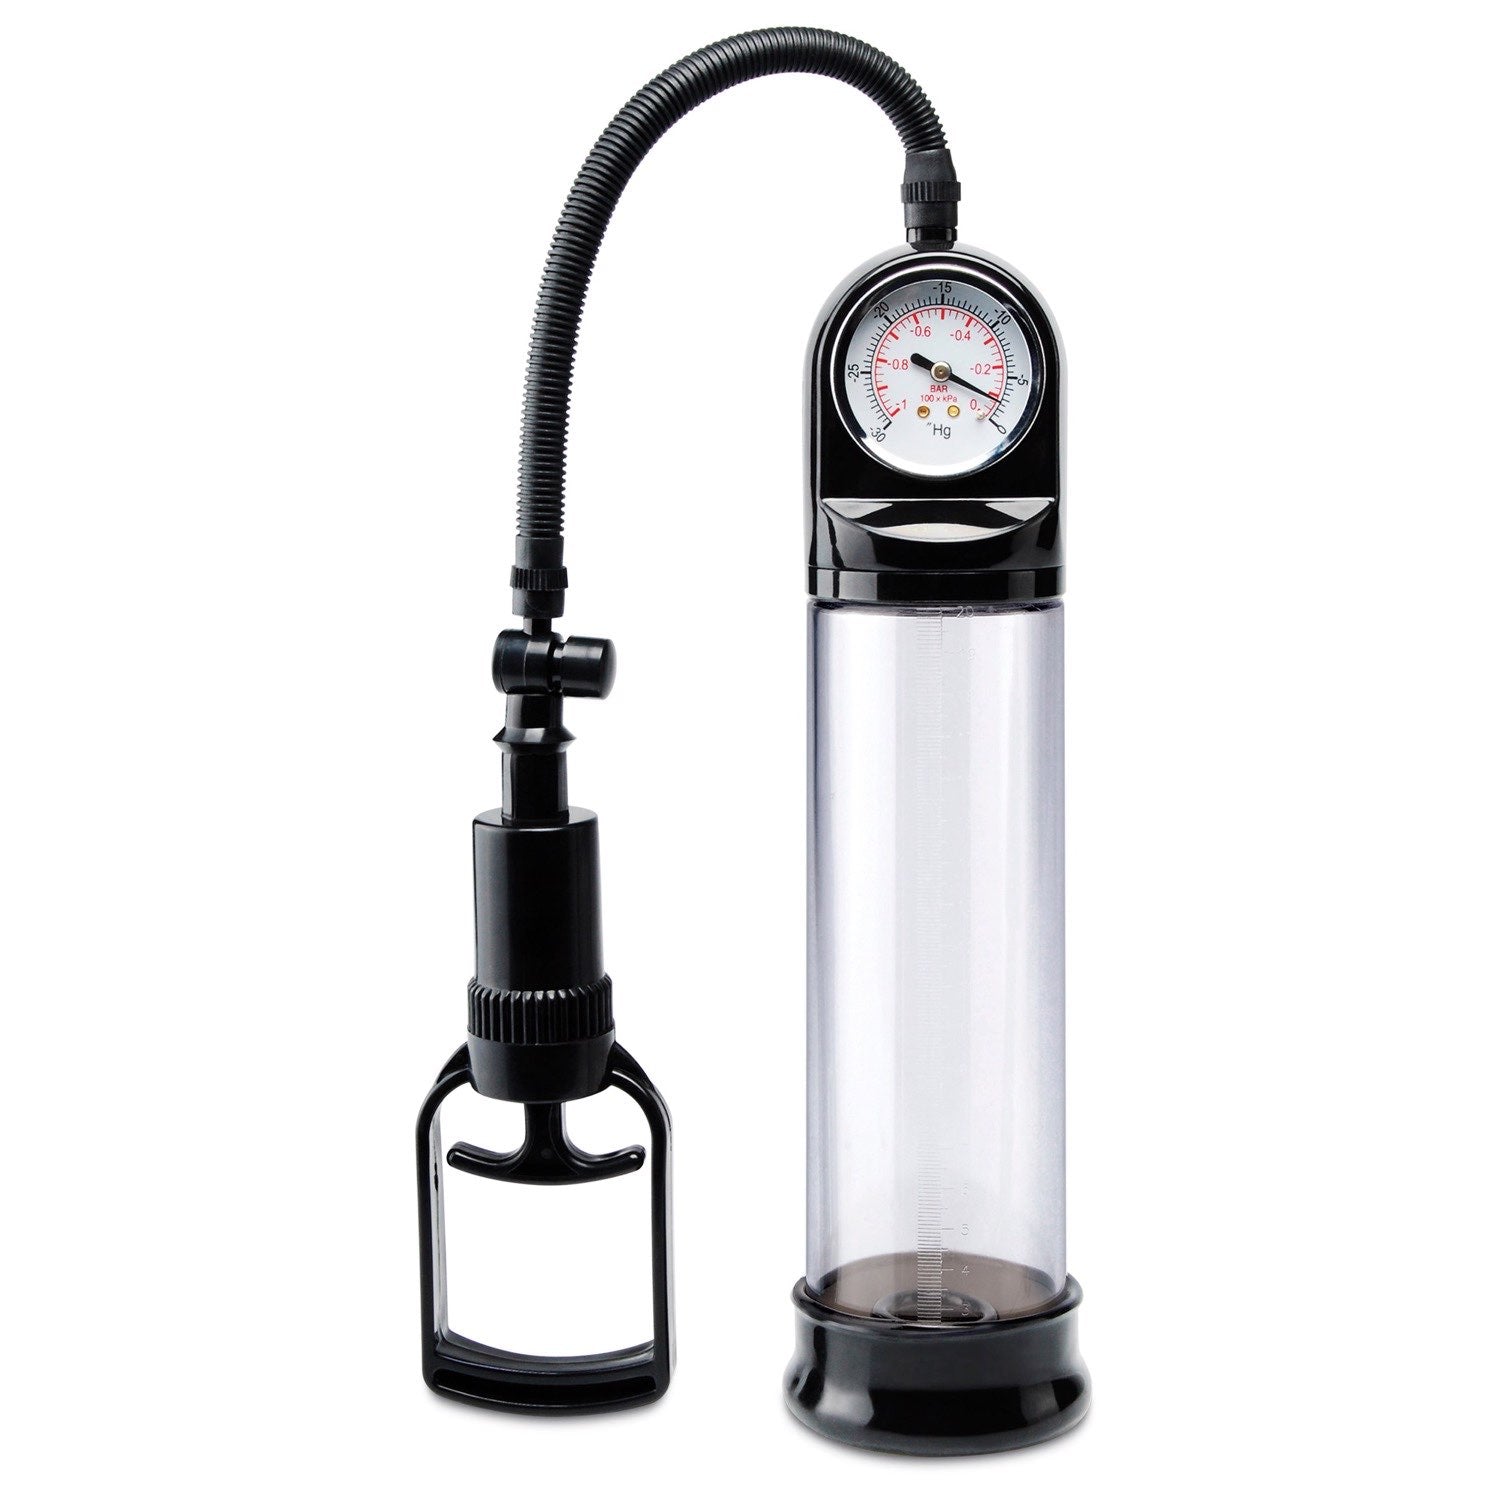 泵沃克斯 Accu-Meter 动力泵 - 透明/黑色阴茎泵，带计量表 by Pipedream